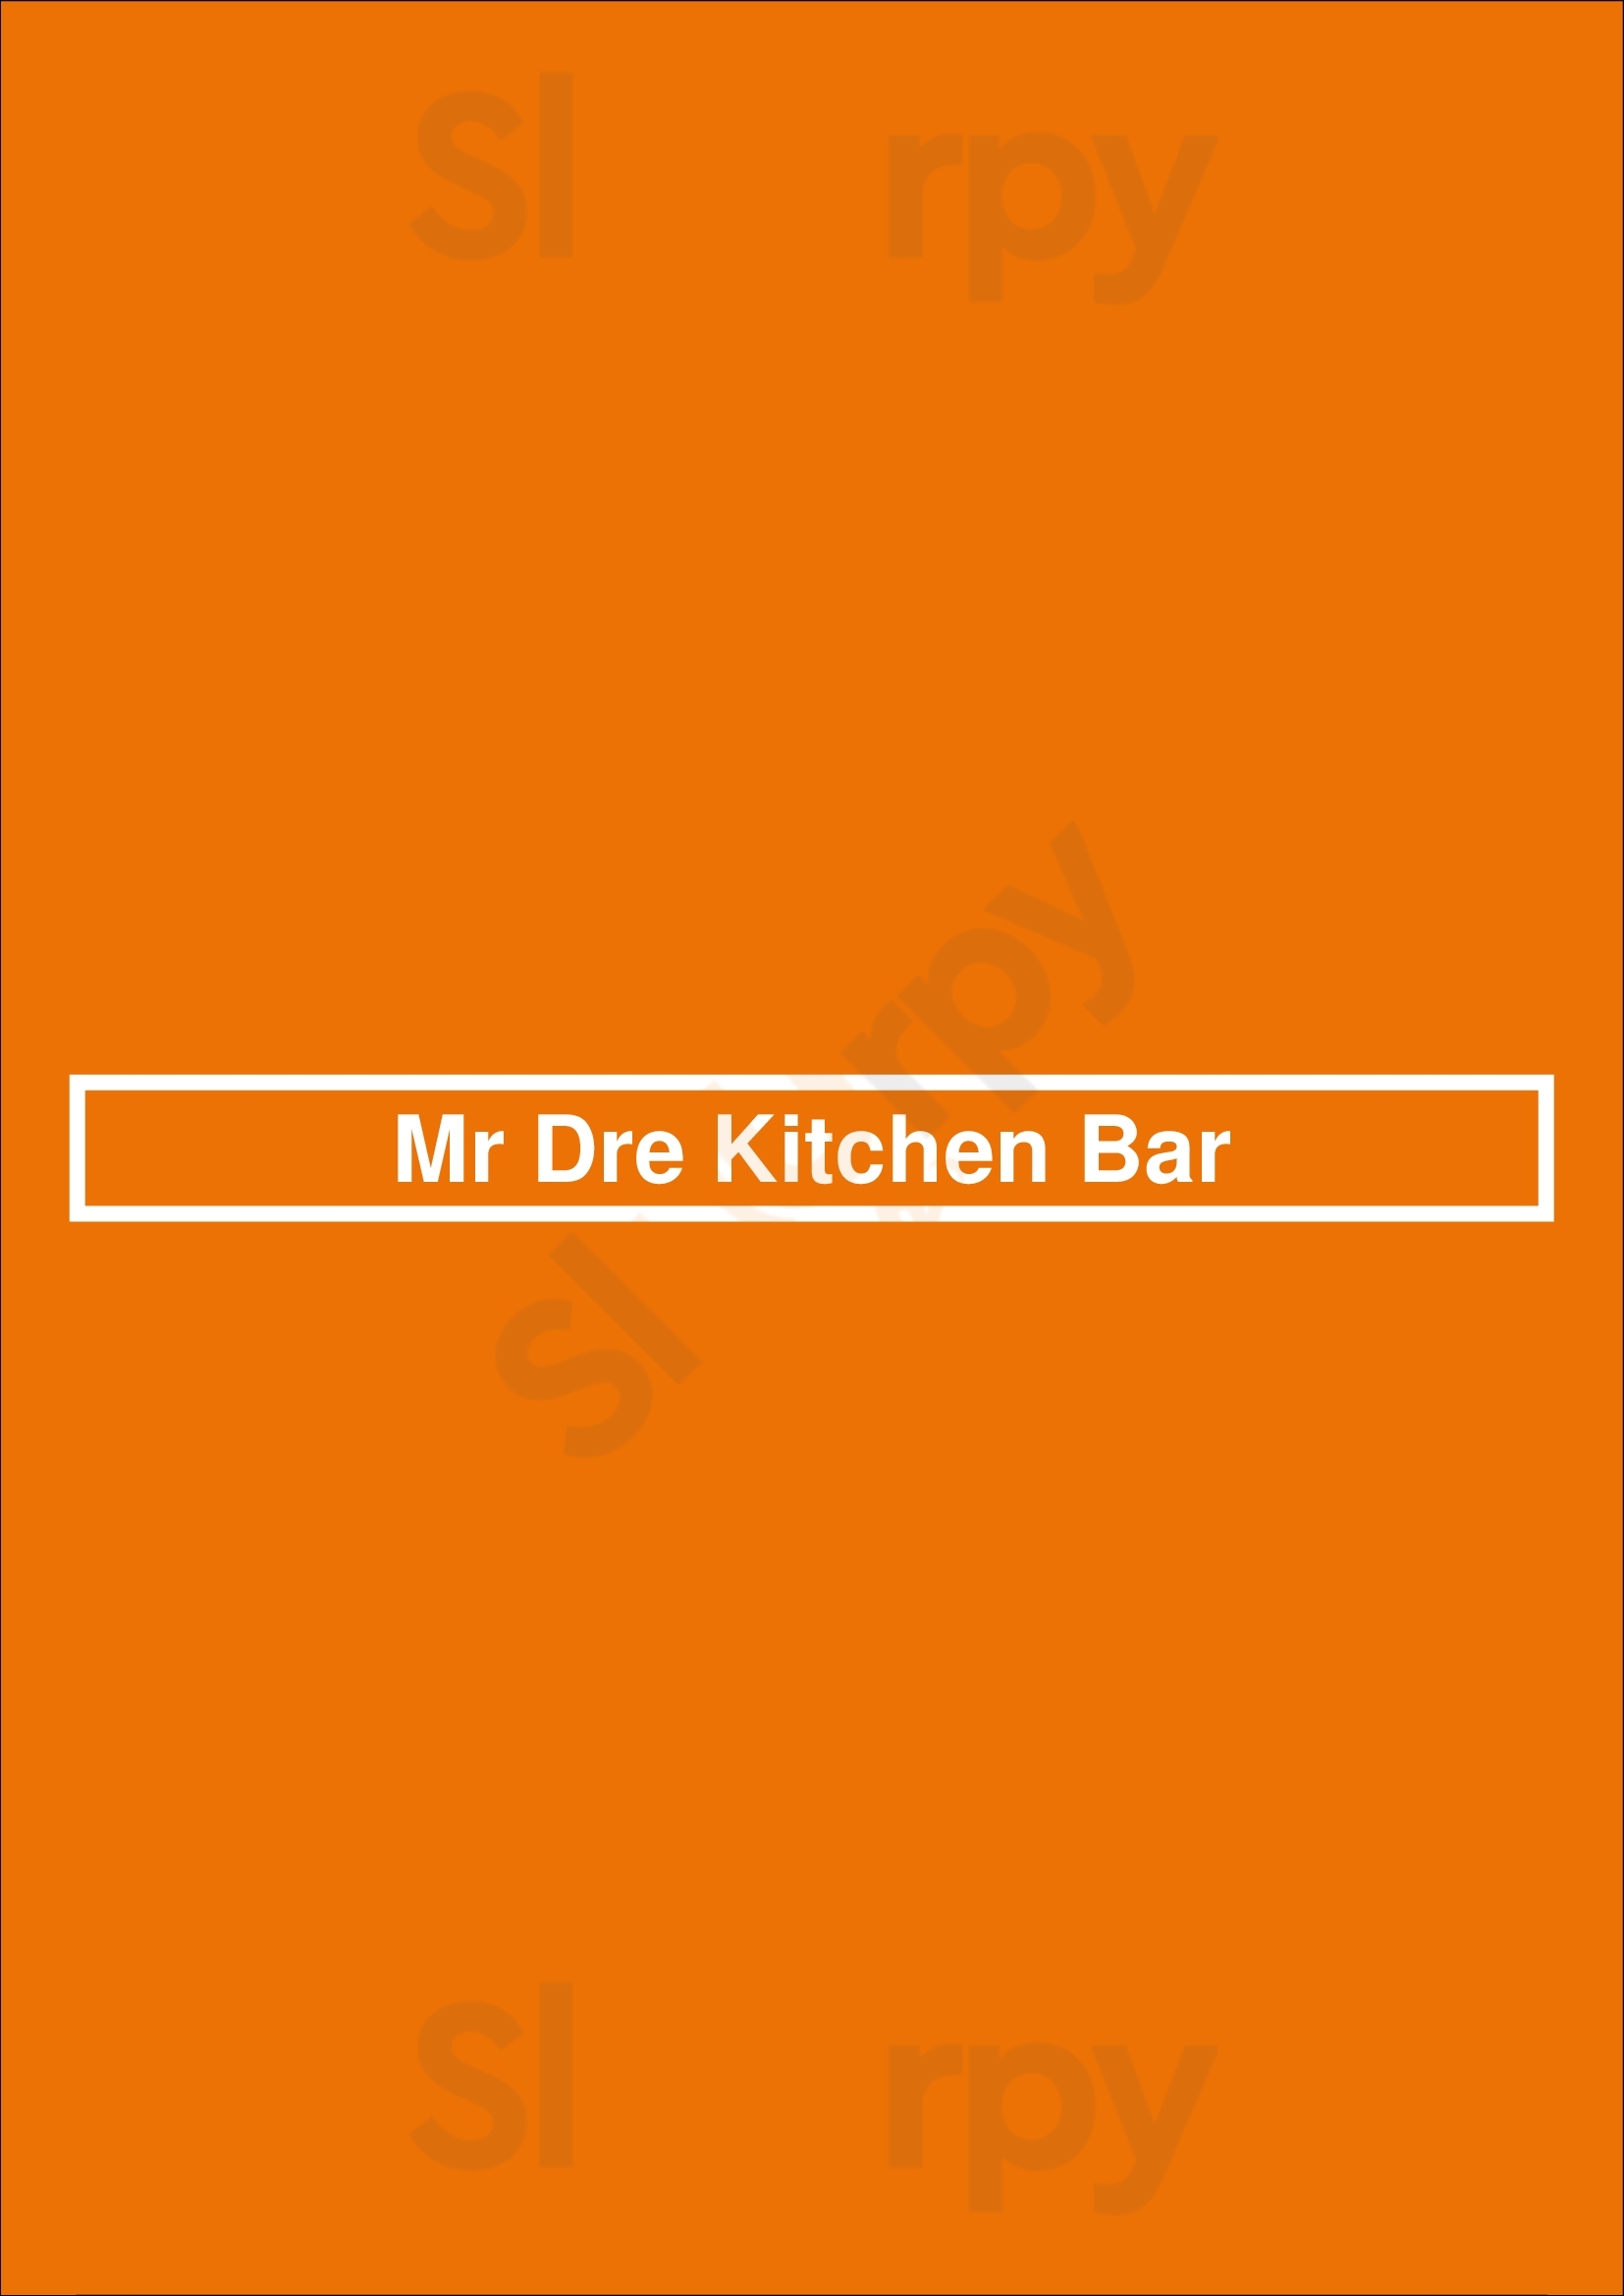 Mr Dre Kitchen Bar College Point Menu - 1